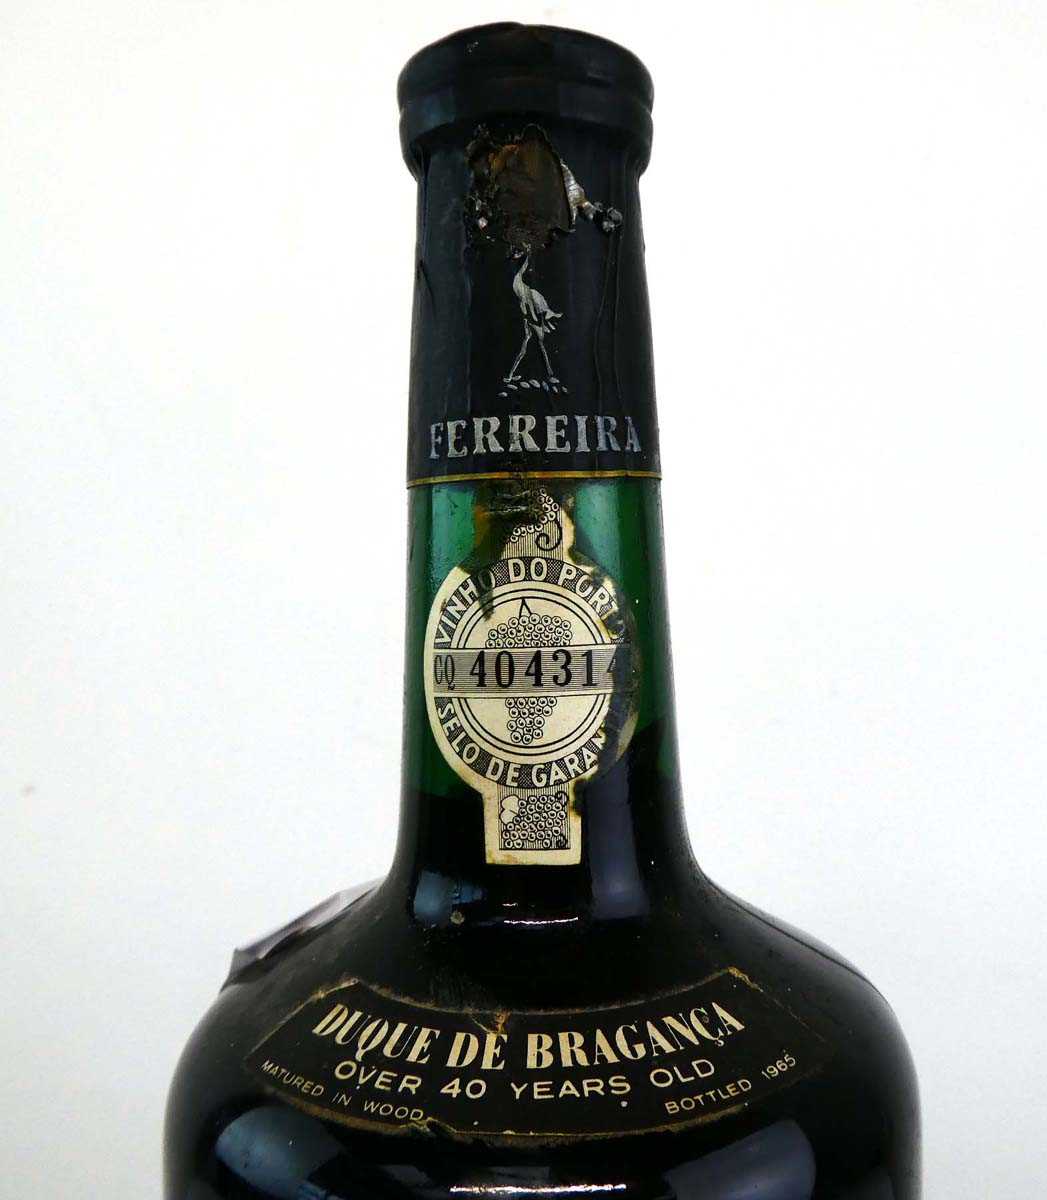 A bottle of Ferreira Duque De Braganca Over 40 years old Port matured in wood bottled 1965 Est. 75cl - Image 2 of 3